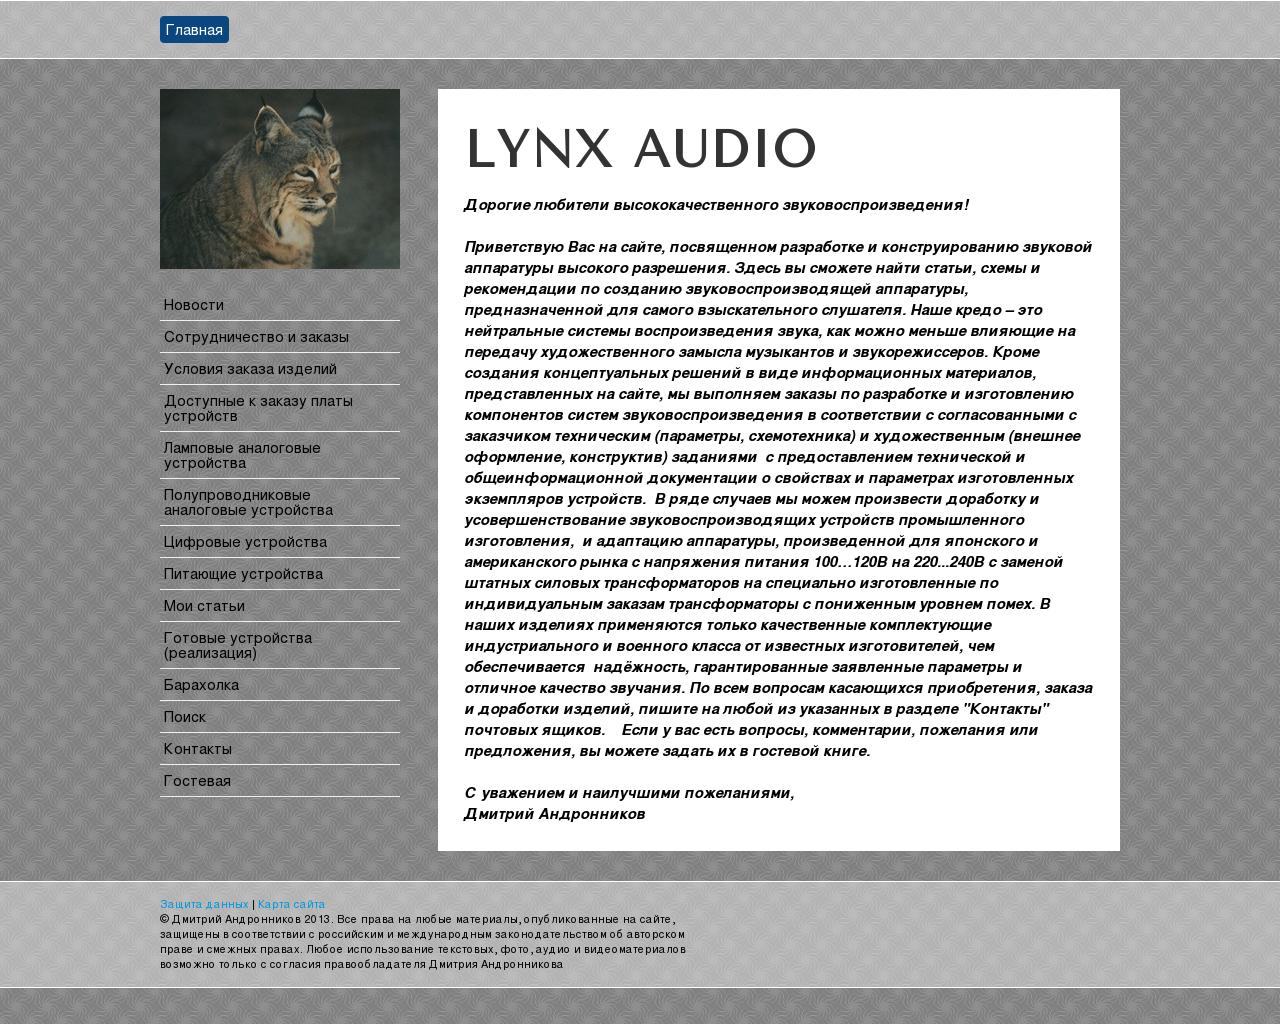 Изображение сайта lynxaudio.ru в разрешении 1280x1024